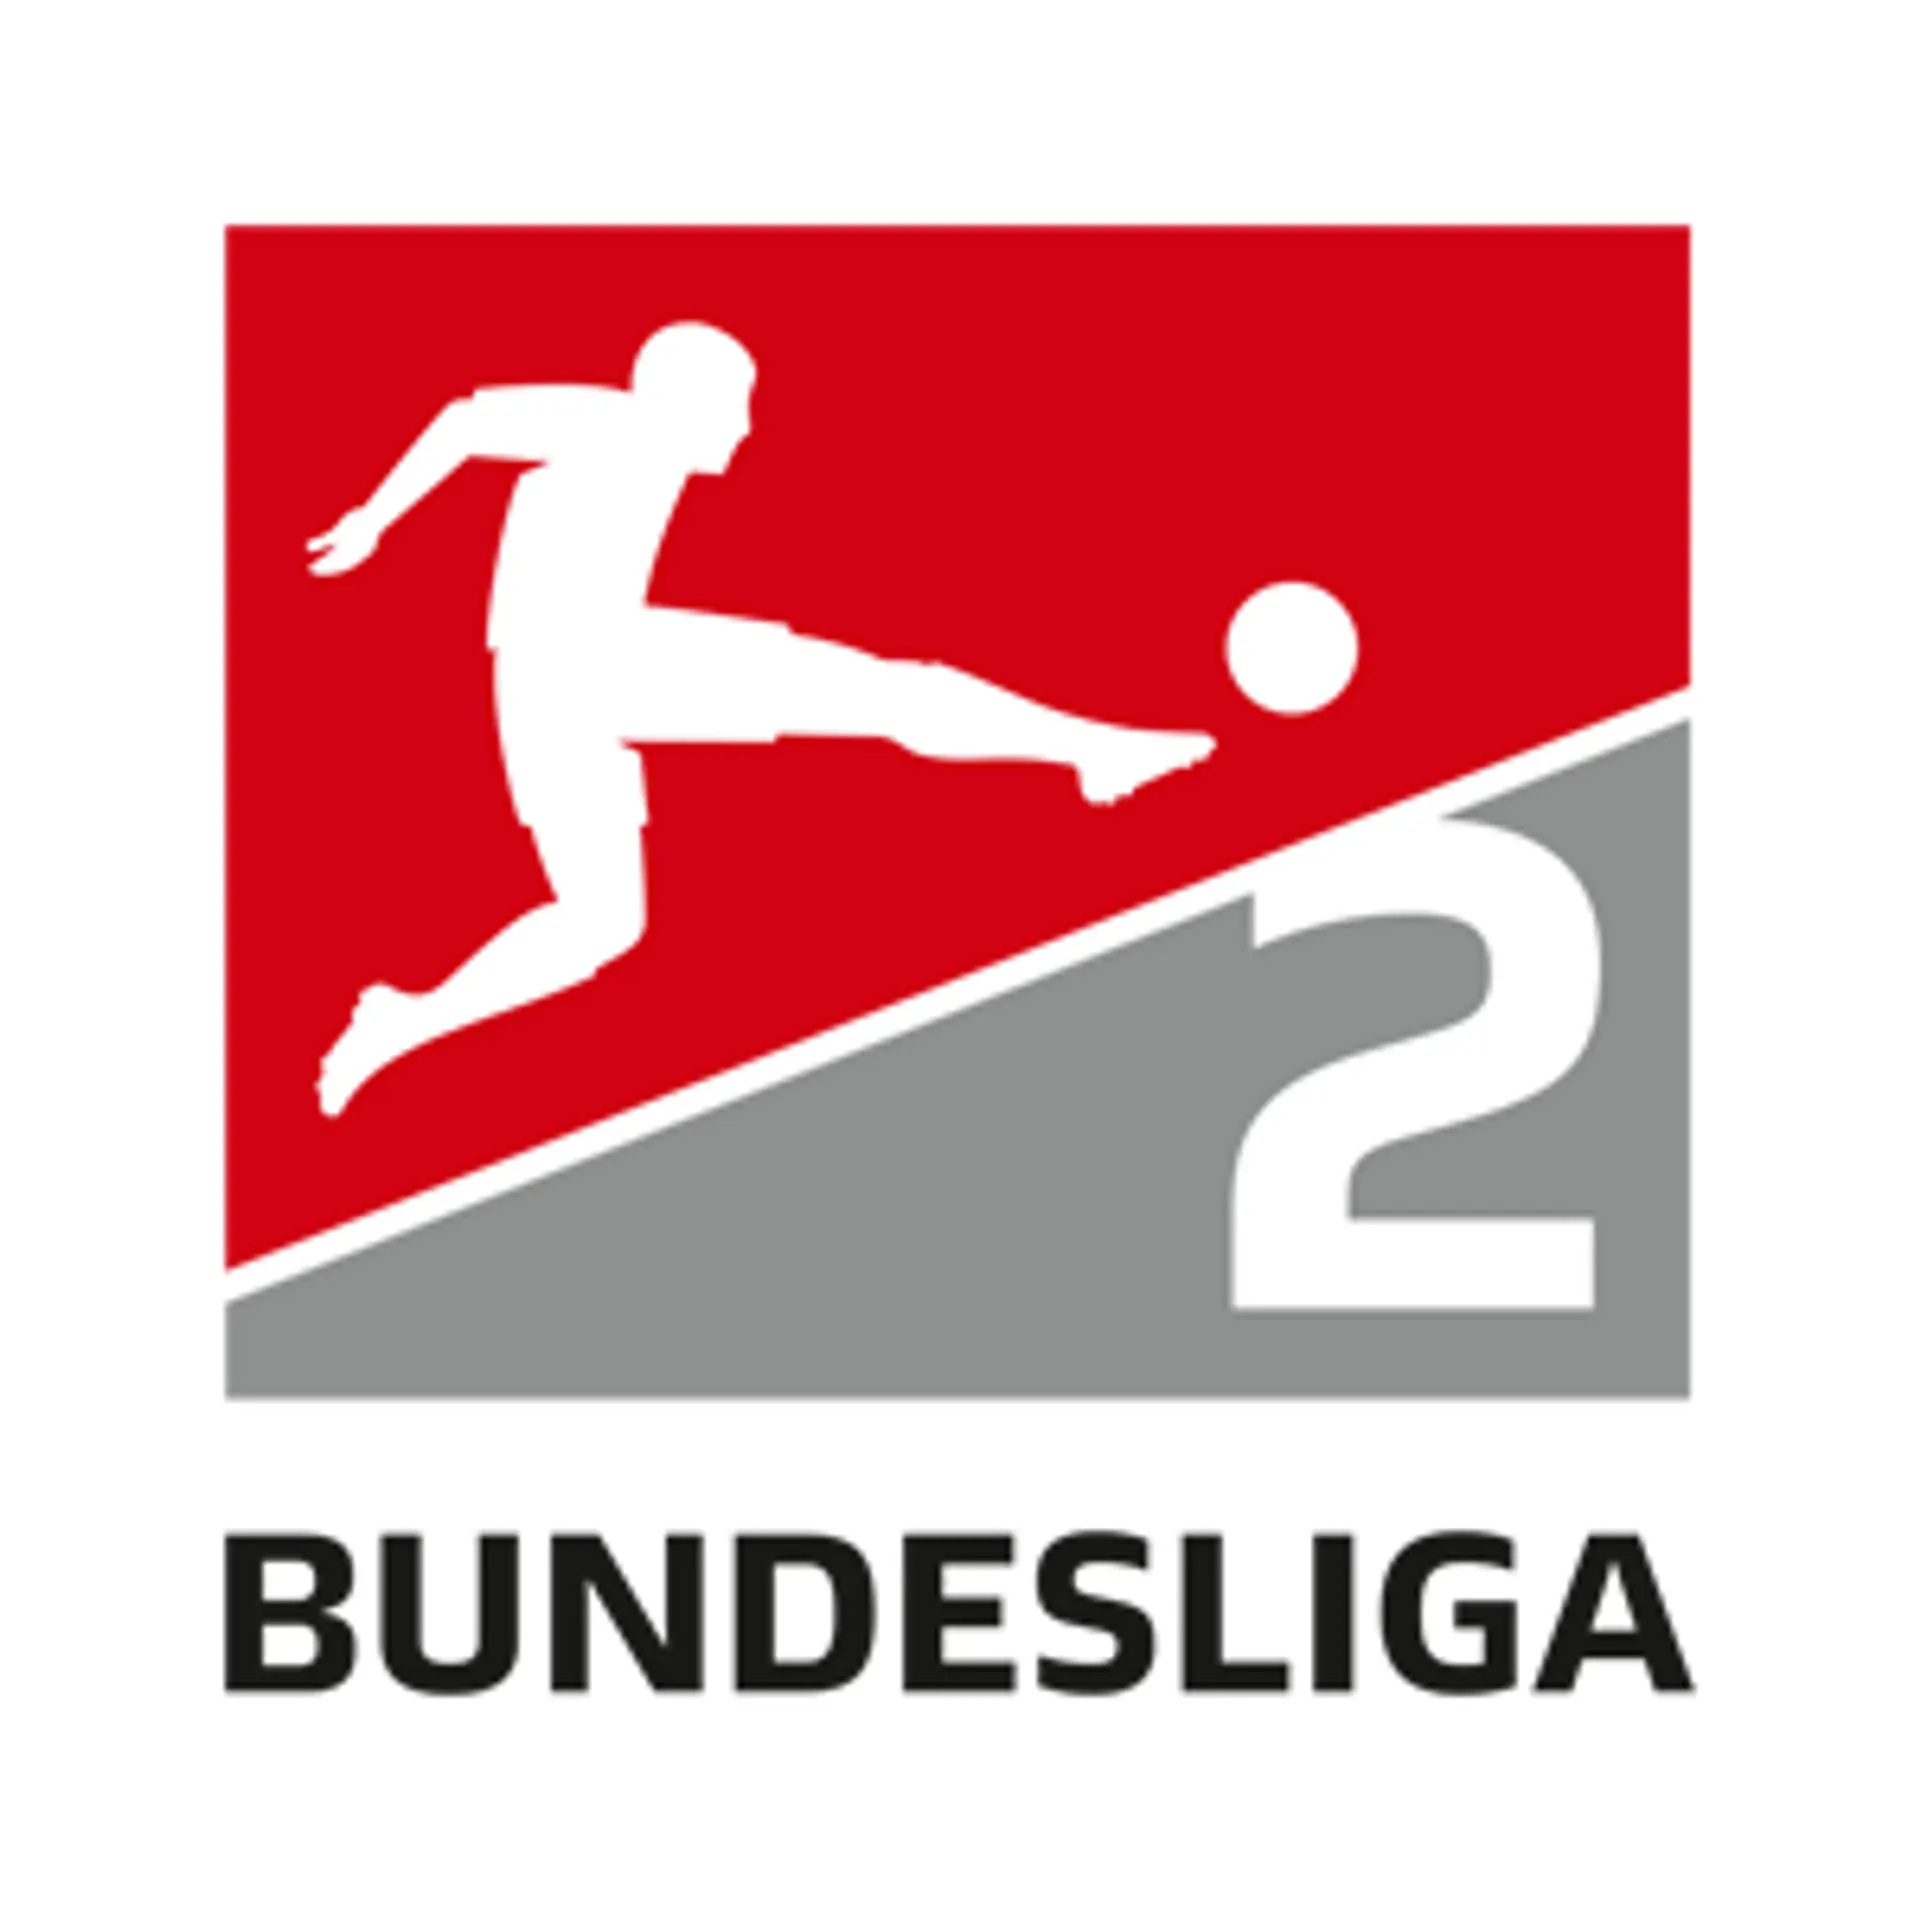 2ª Bundesliga